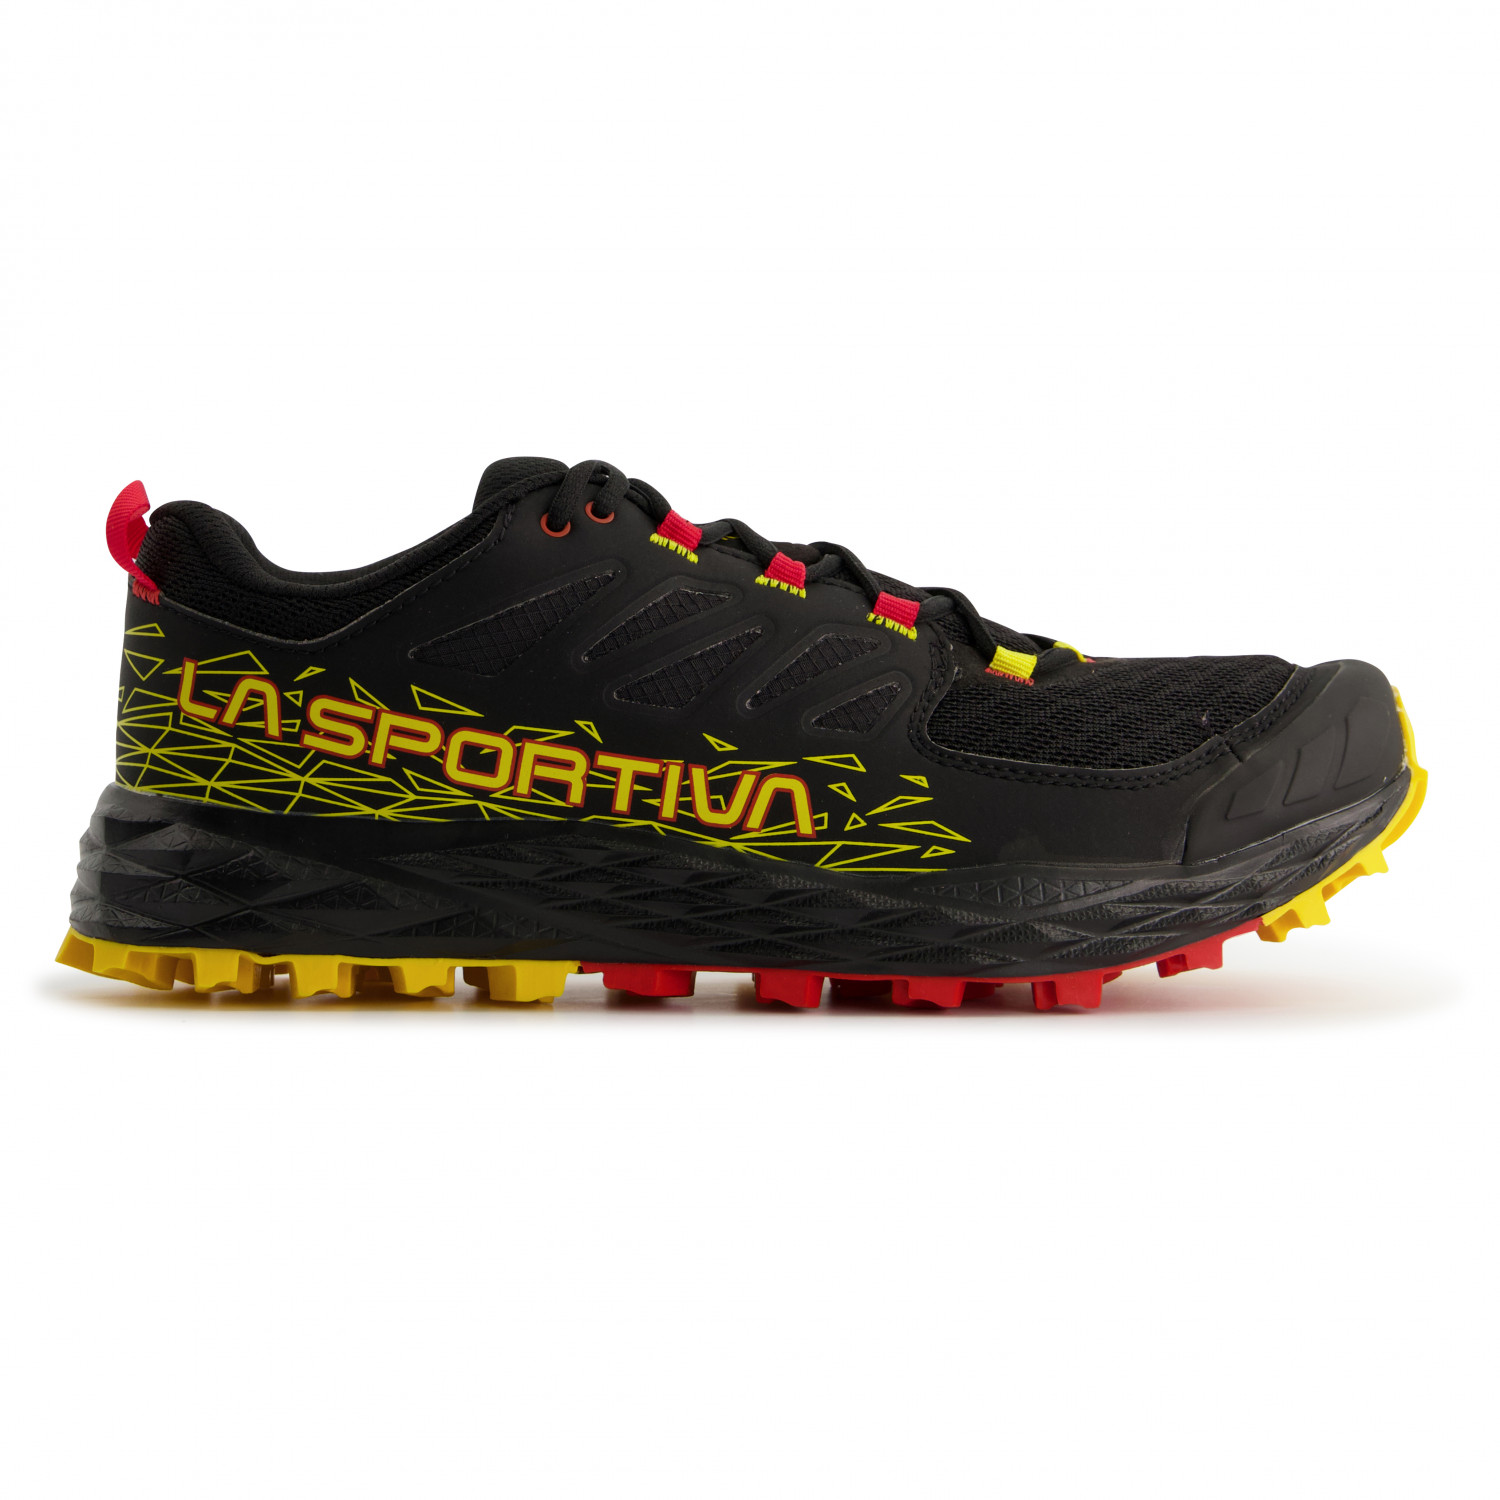 Кроссовки для бега по пересеченной местности La Sportiva Lycan II, цвет Black/Yellow кроссовки для бега по пересеченной местности la sportiva akasha ii цвет black yellow